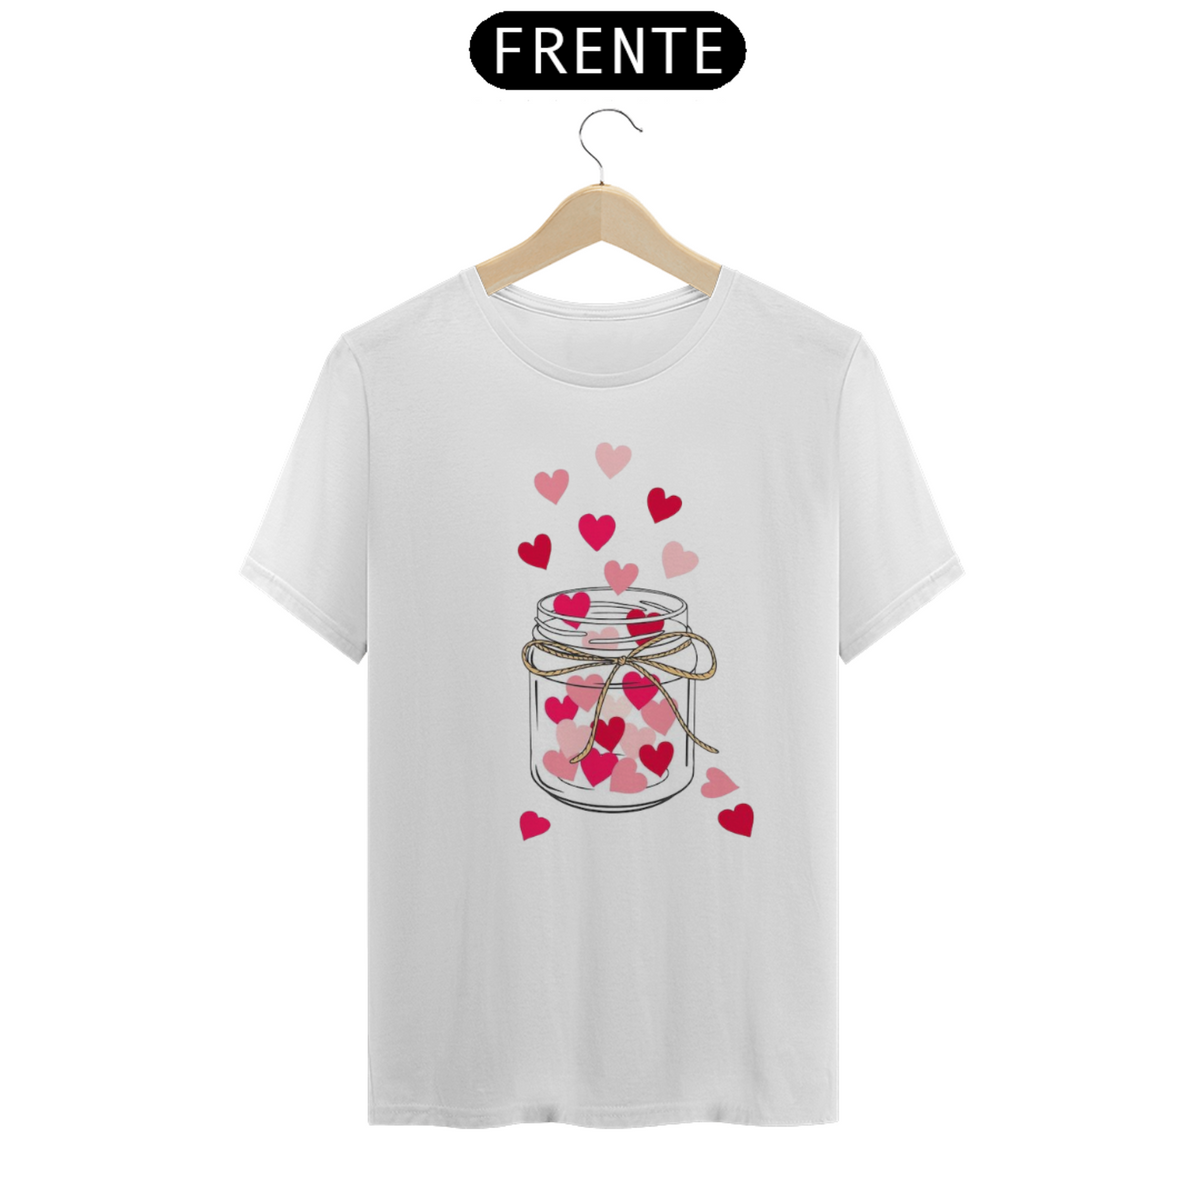 Nome do produto: Camiseta Pote de coração de mãe